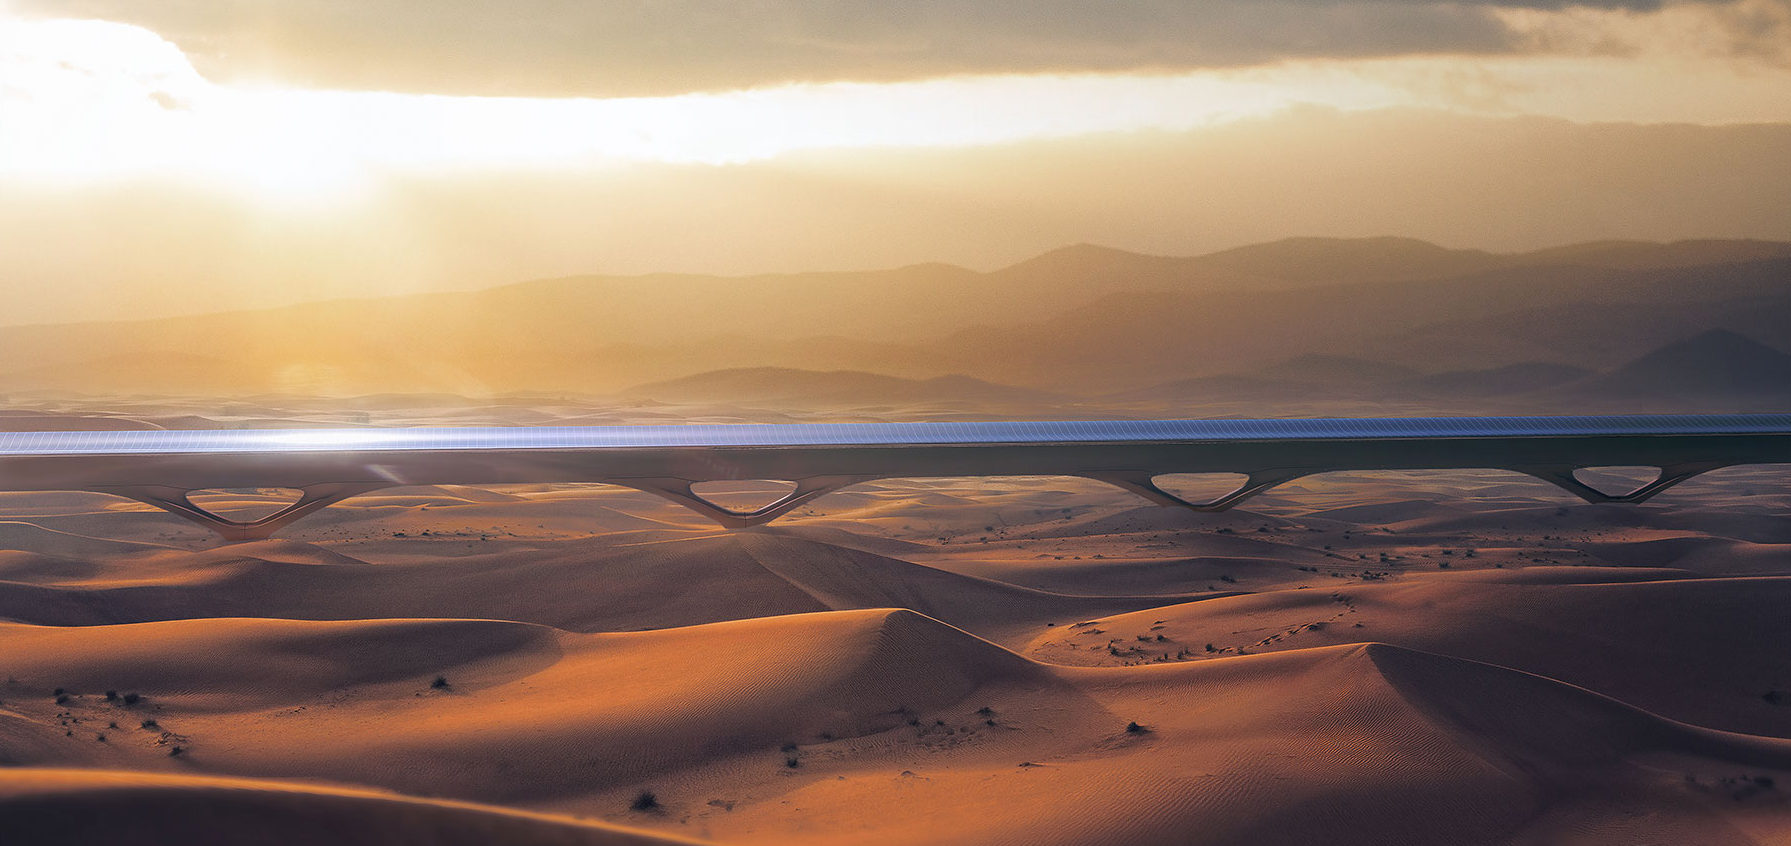 Hyperloop TT annonce la construction de la première ligne entre Dubaï et Abu Dhabi